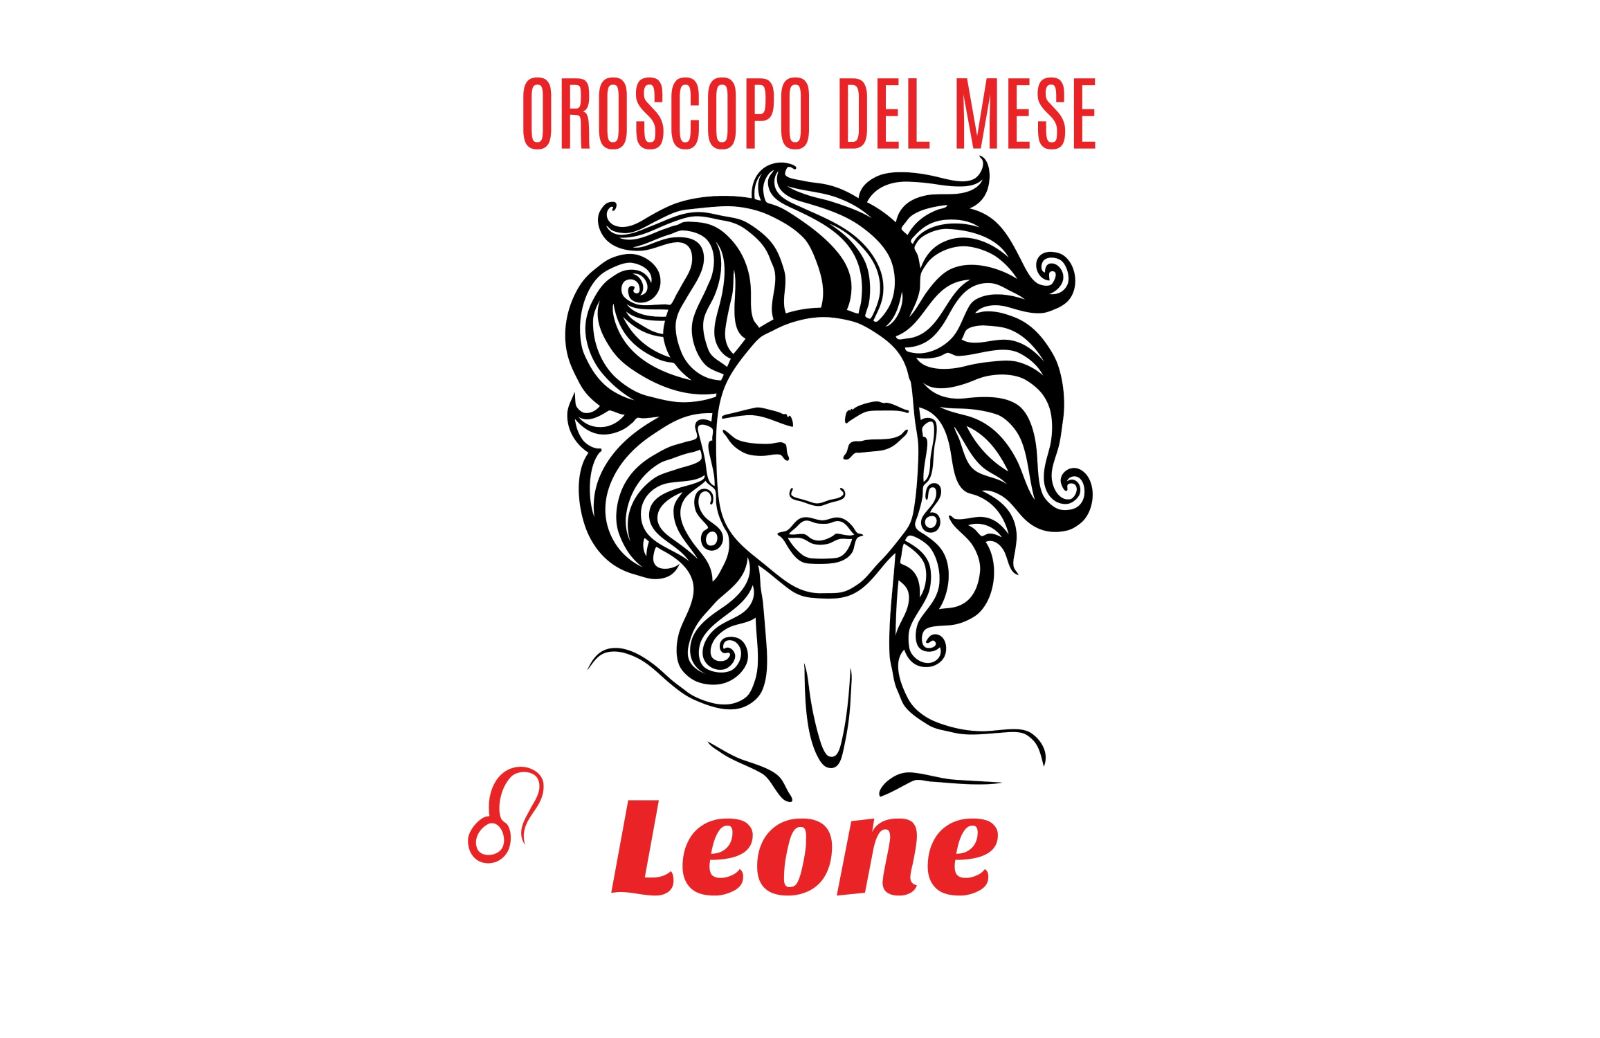 Oroscopo del mese- Leone: novembre 2019